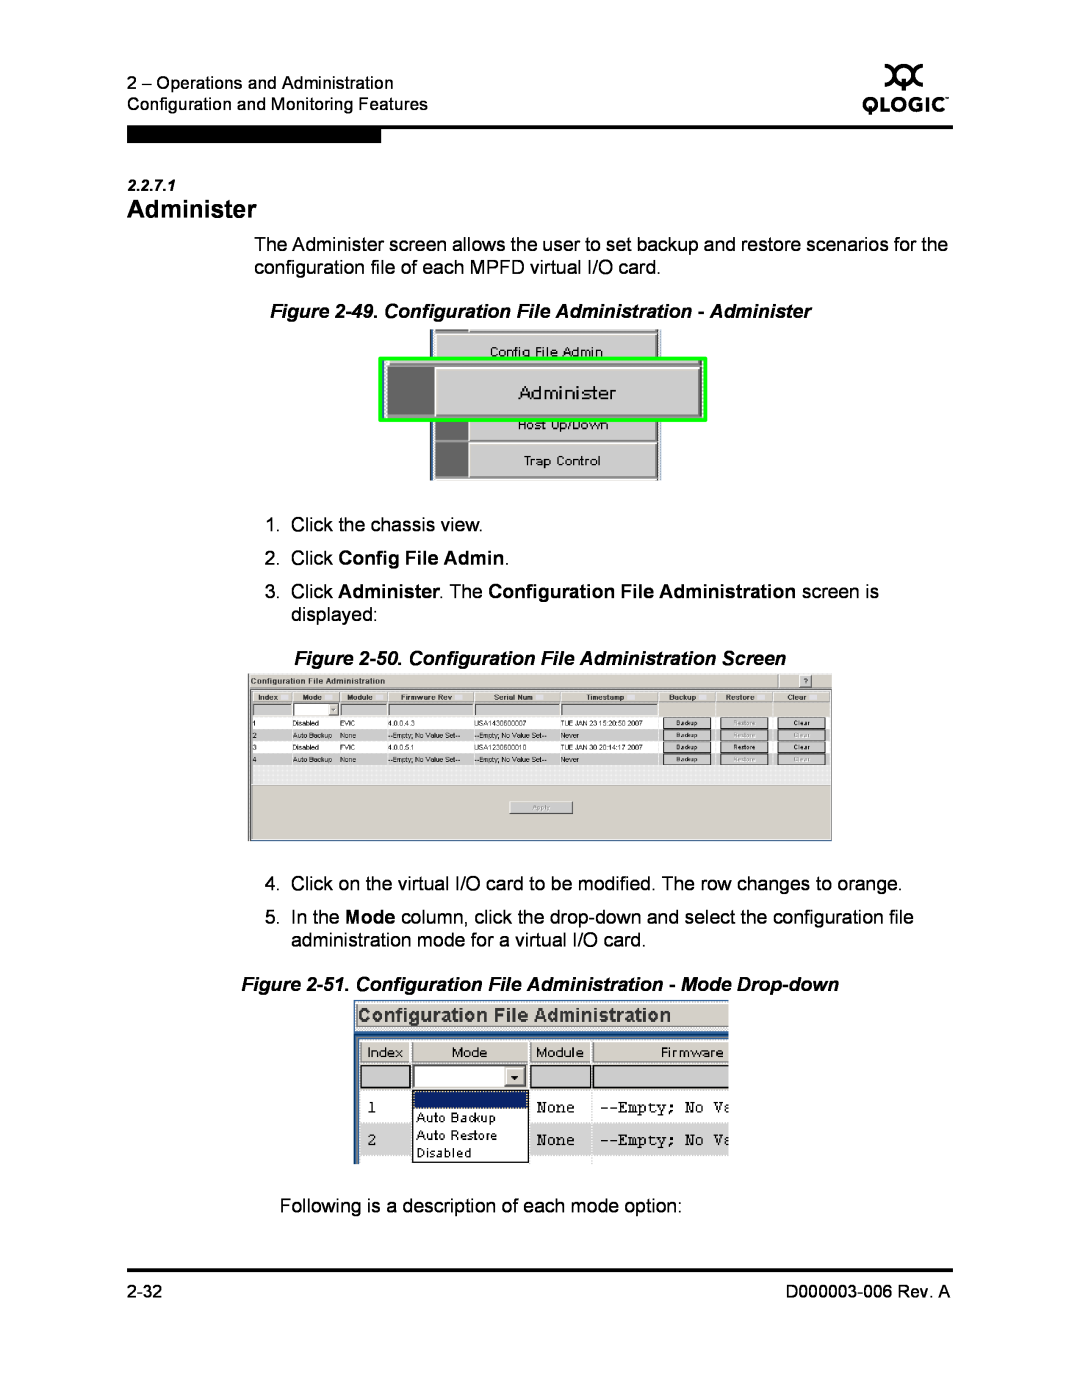 Q-Logic 9000 manual 49. Configuration File Administration - Administer, Click Config File Admin 